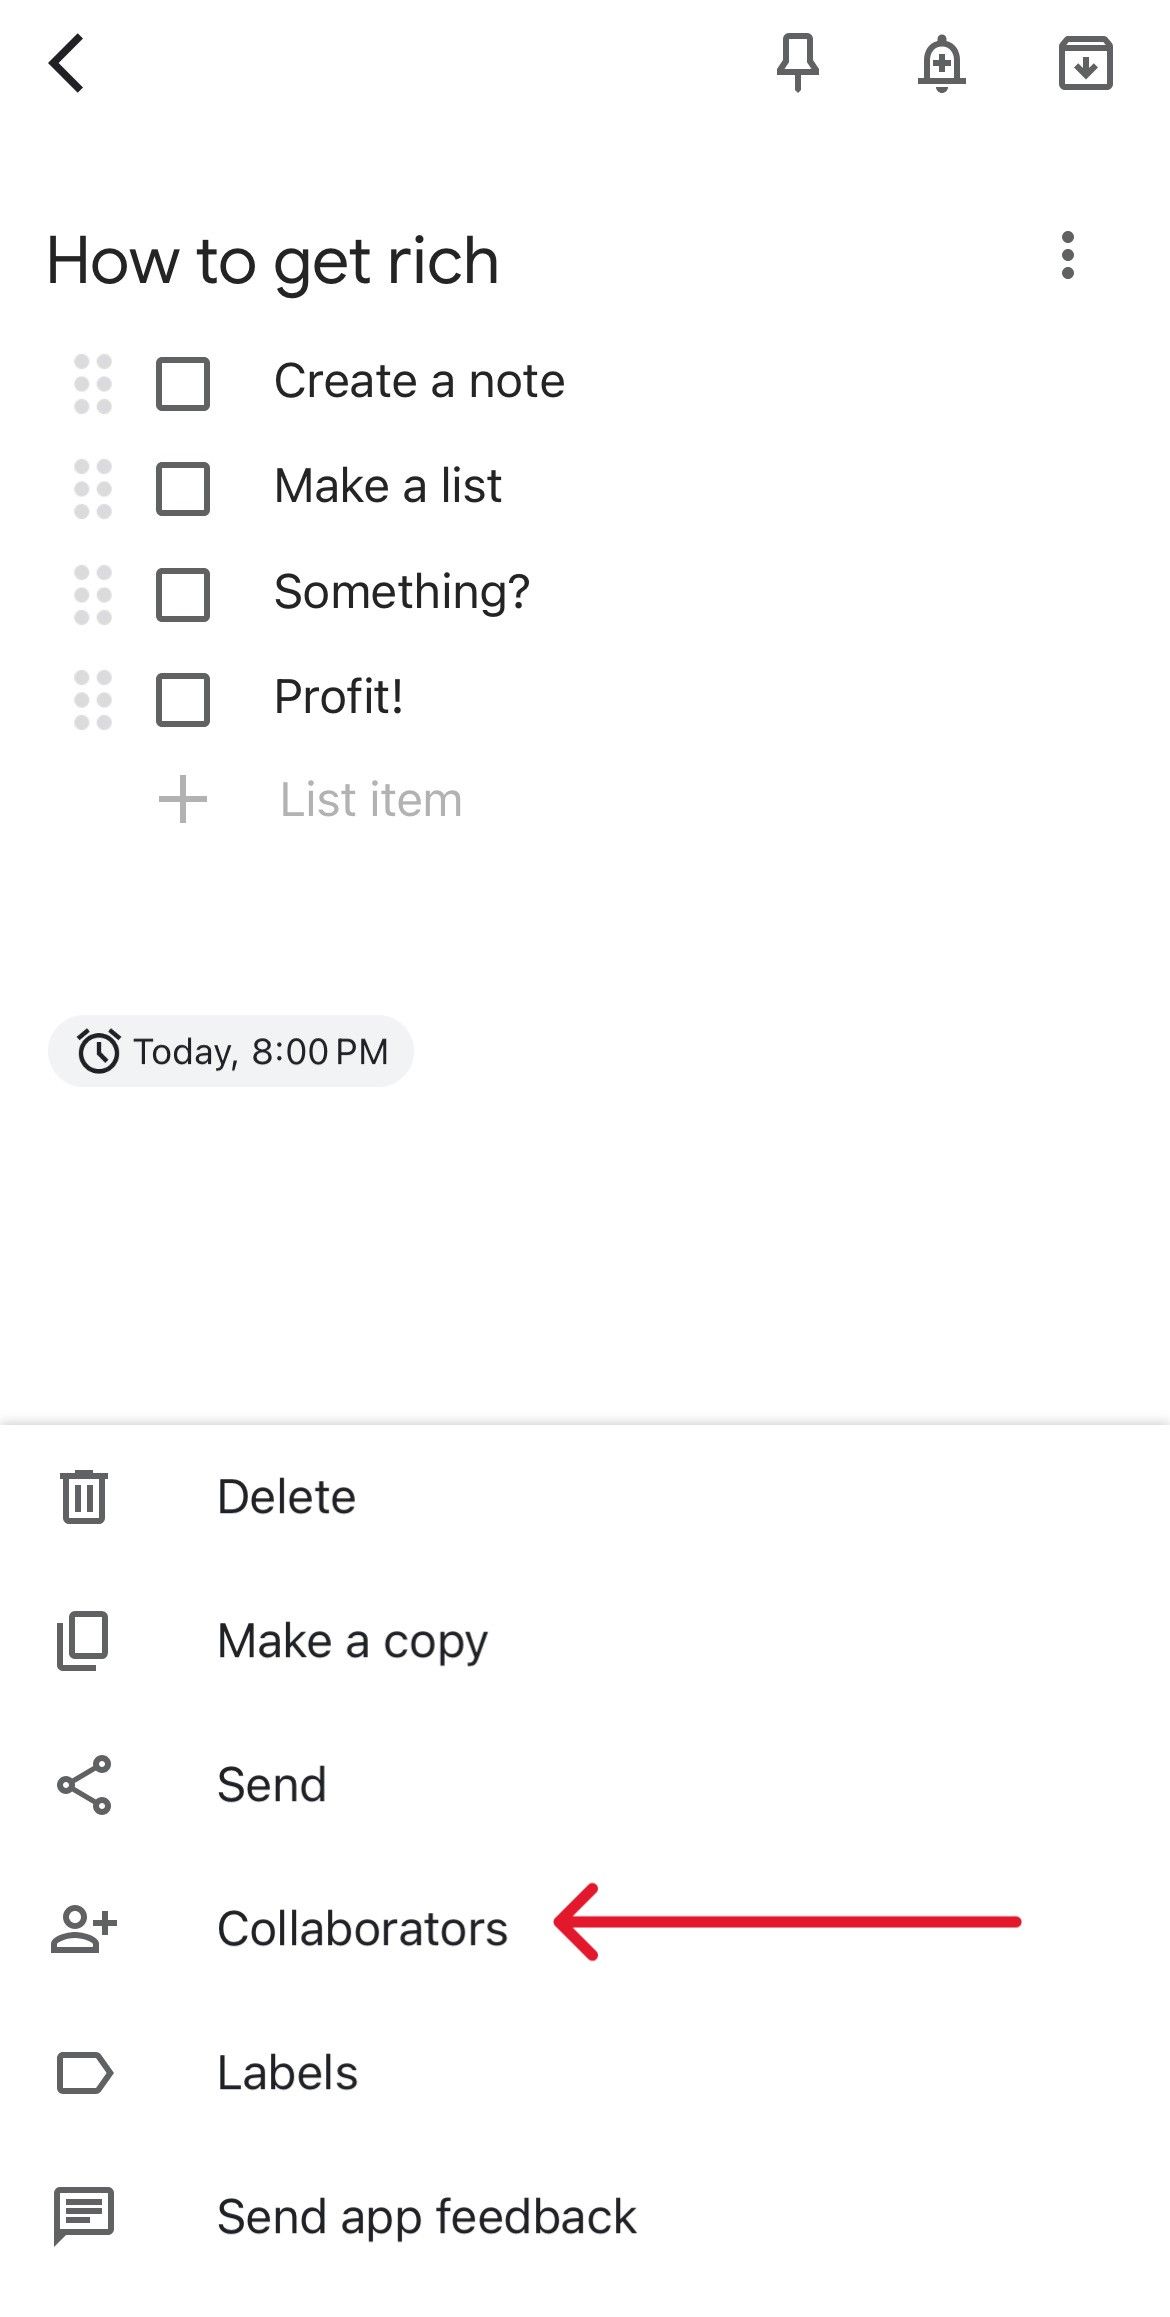 Menu de notas do Google Keep com uma seta vermelha apontando para a opção Colaboradores.